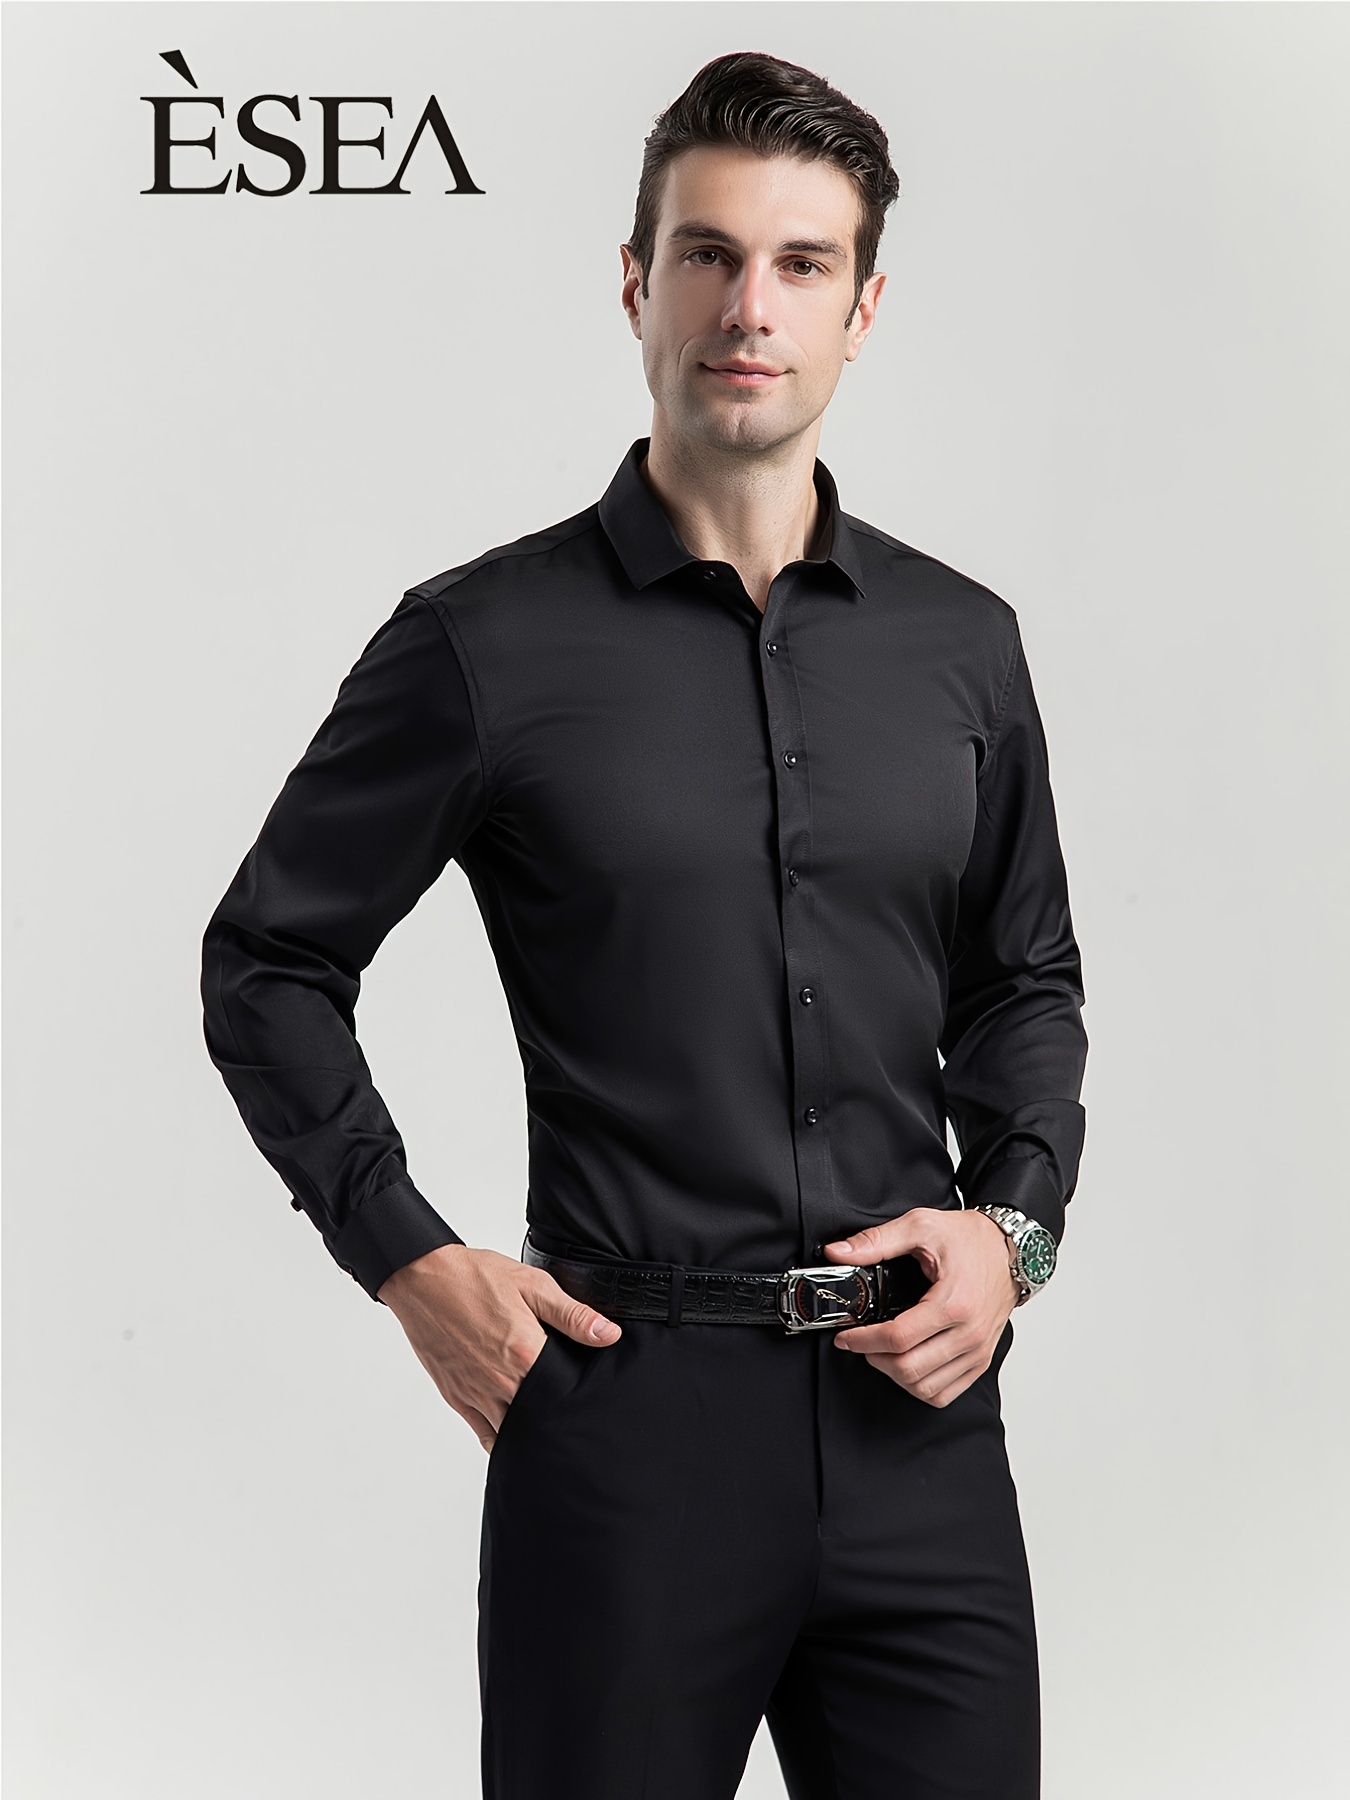 Long Sleeve Men Dress Shirts Simple All Match Business Formal Wear